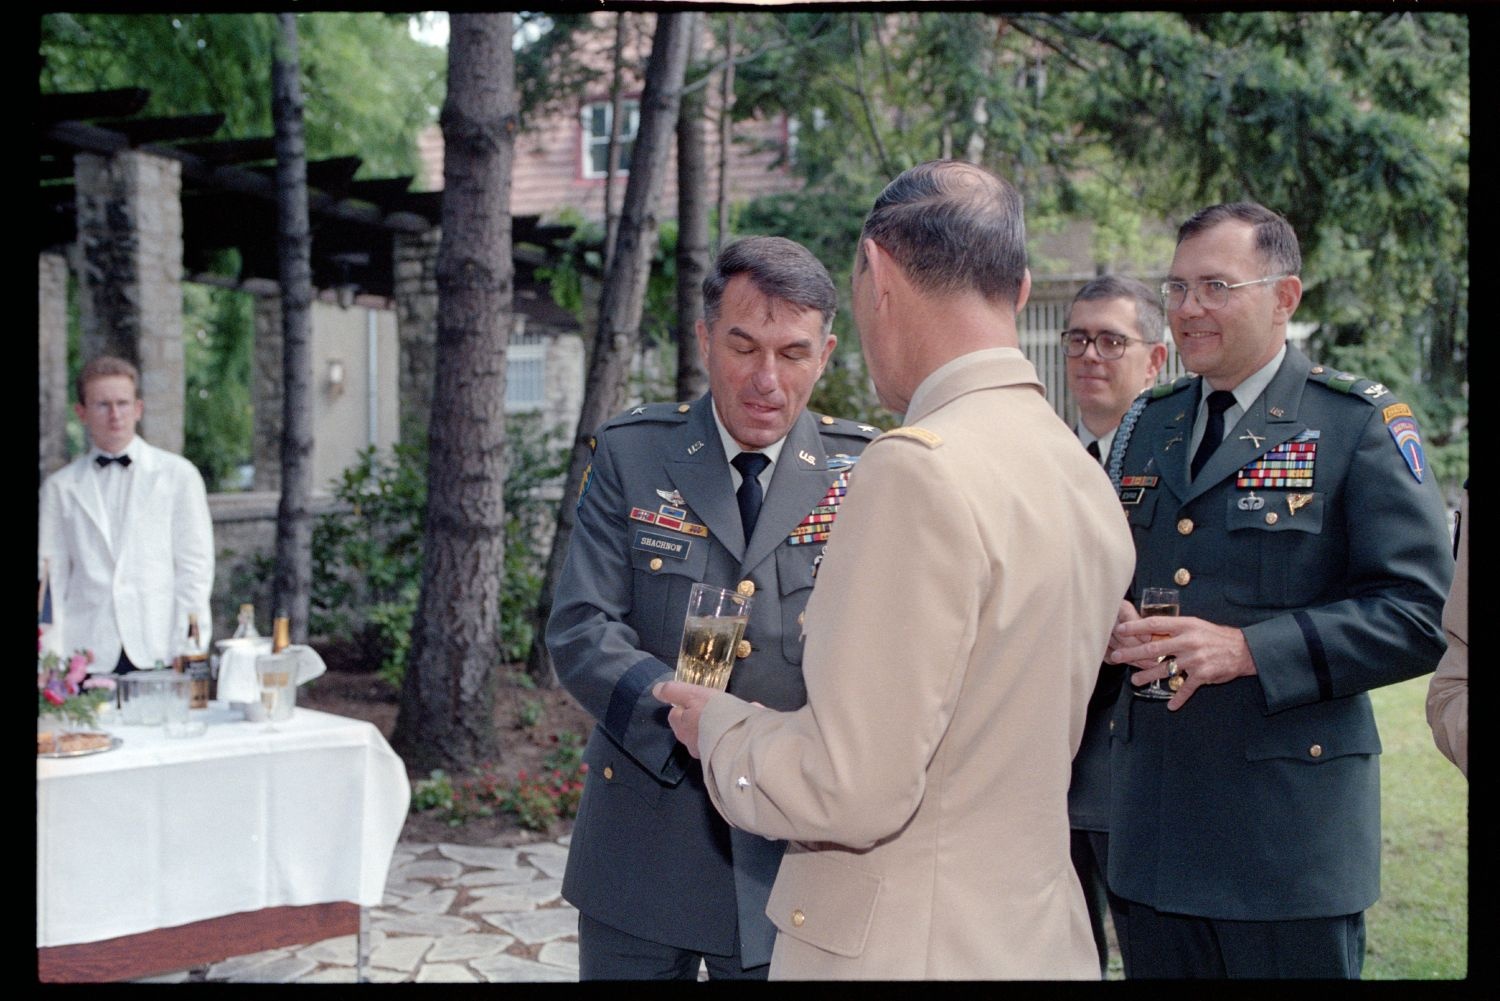 Fotografie: Besuch von Brigadier General Sidney Shachnow im Quartier Napoléon in Berlin-Reinickendorf